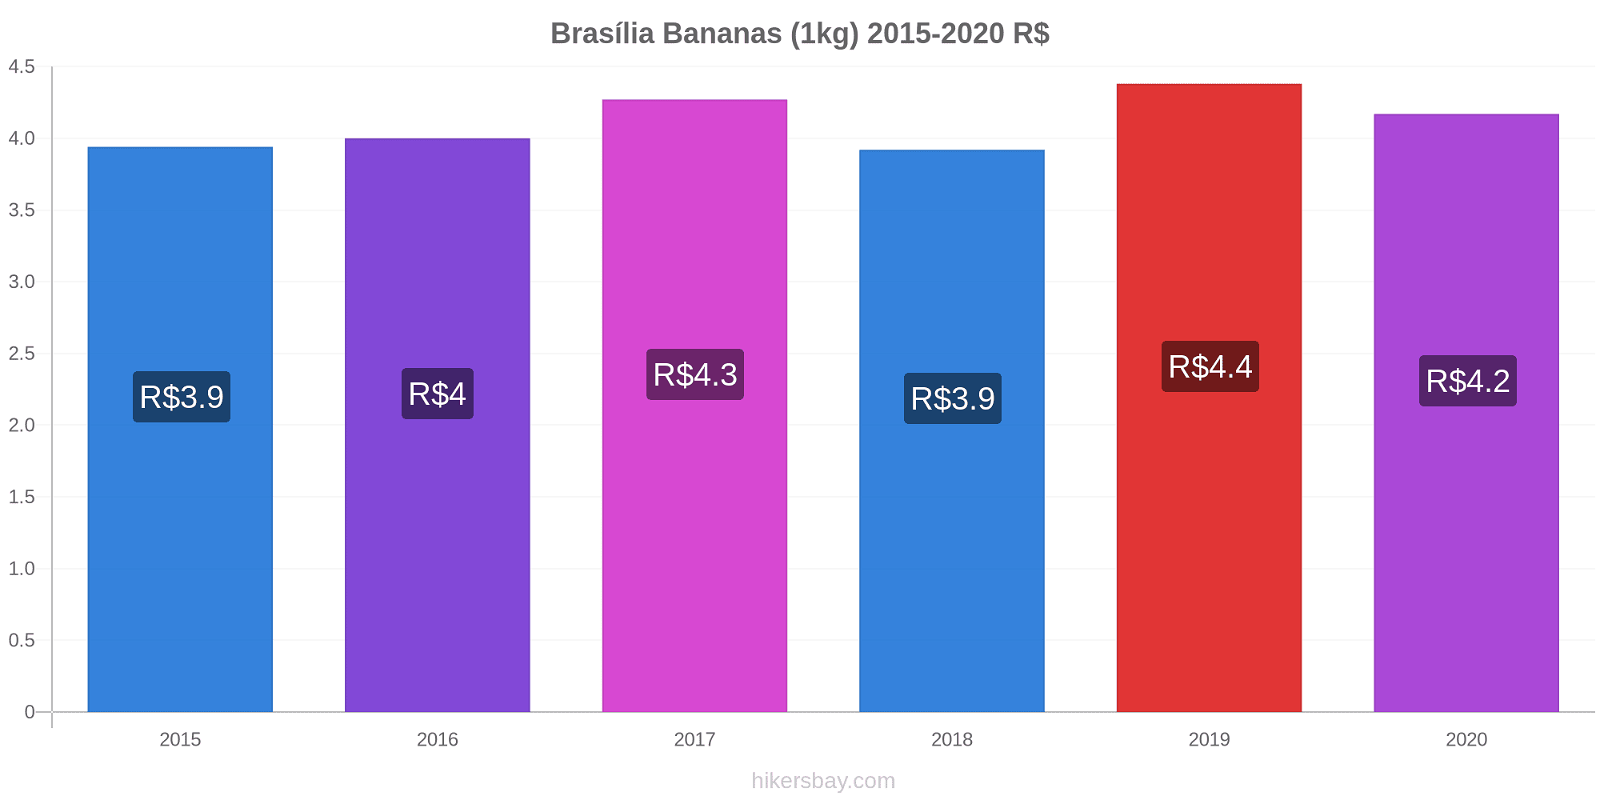 Brasília variação de preço Banana (1kg) hikersbay.com